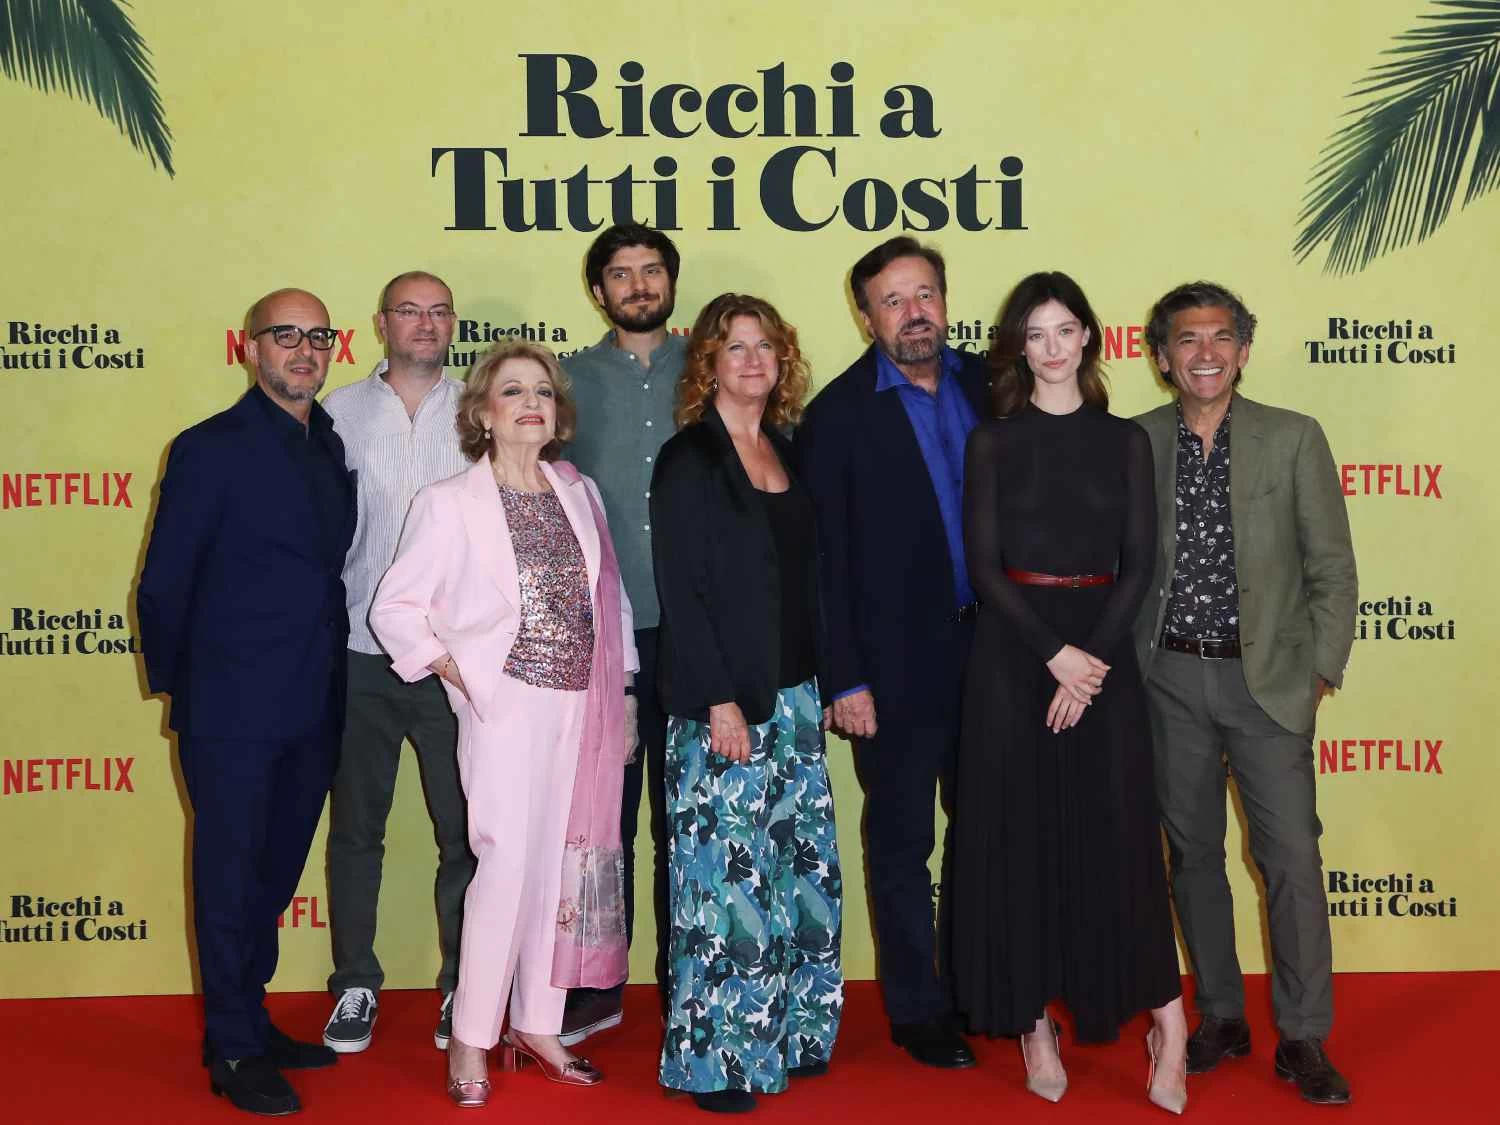 “Ricos a toda costa”: el tráiler de la película con De Sica en Netflix